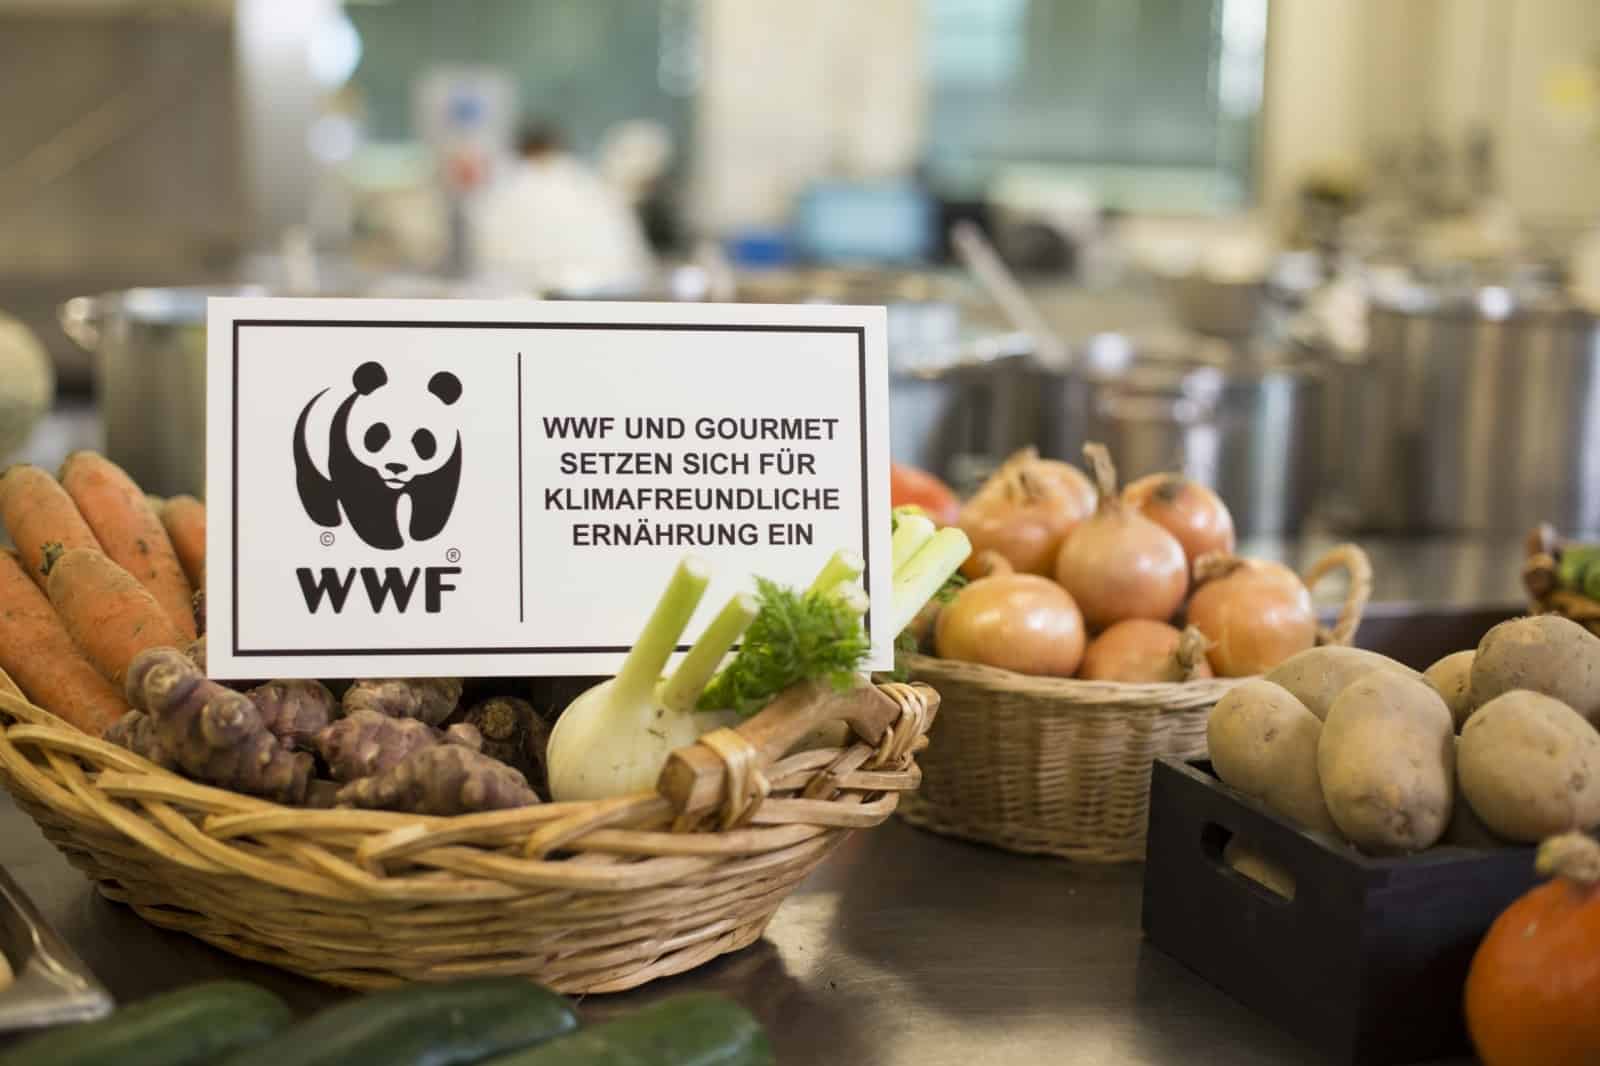 Gemüse mit Kampagnenlogo WWF und GOURMET, © by GOURMET